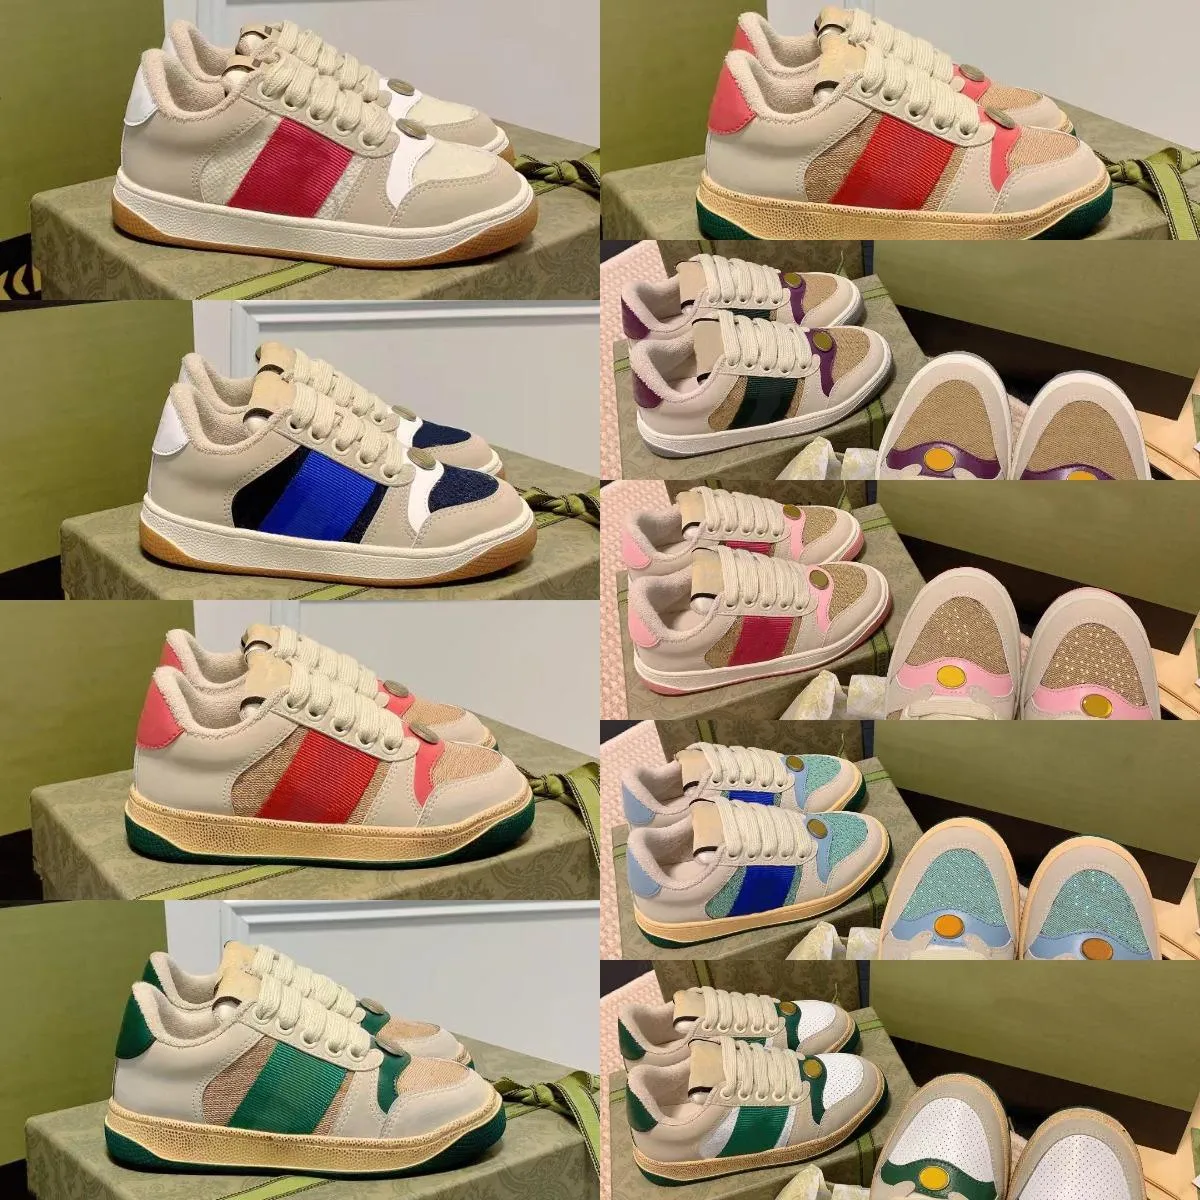 Çocuk Ayakkabı Erkek Kızlar Bebek Tasarımcı Spor ayakkabıları Çocuklar Kadın Erkekler Kirli Deri Ayakkabı Mavi Kırmızı Web Stripe Trainer Dantel Yukarı Tuval Flats Vintage Classic Runner